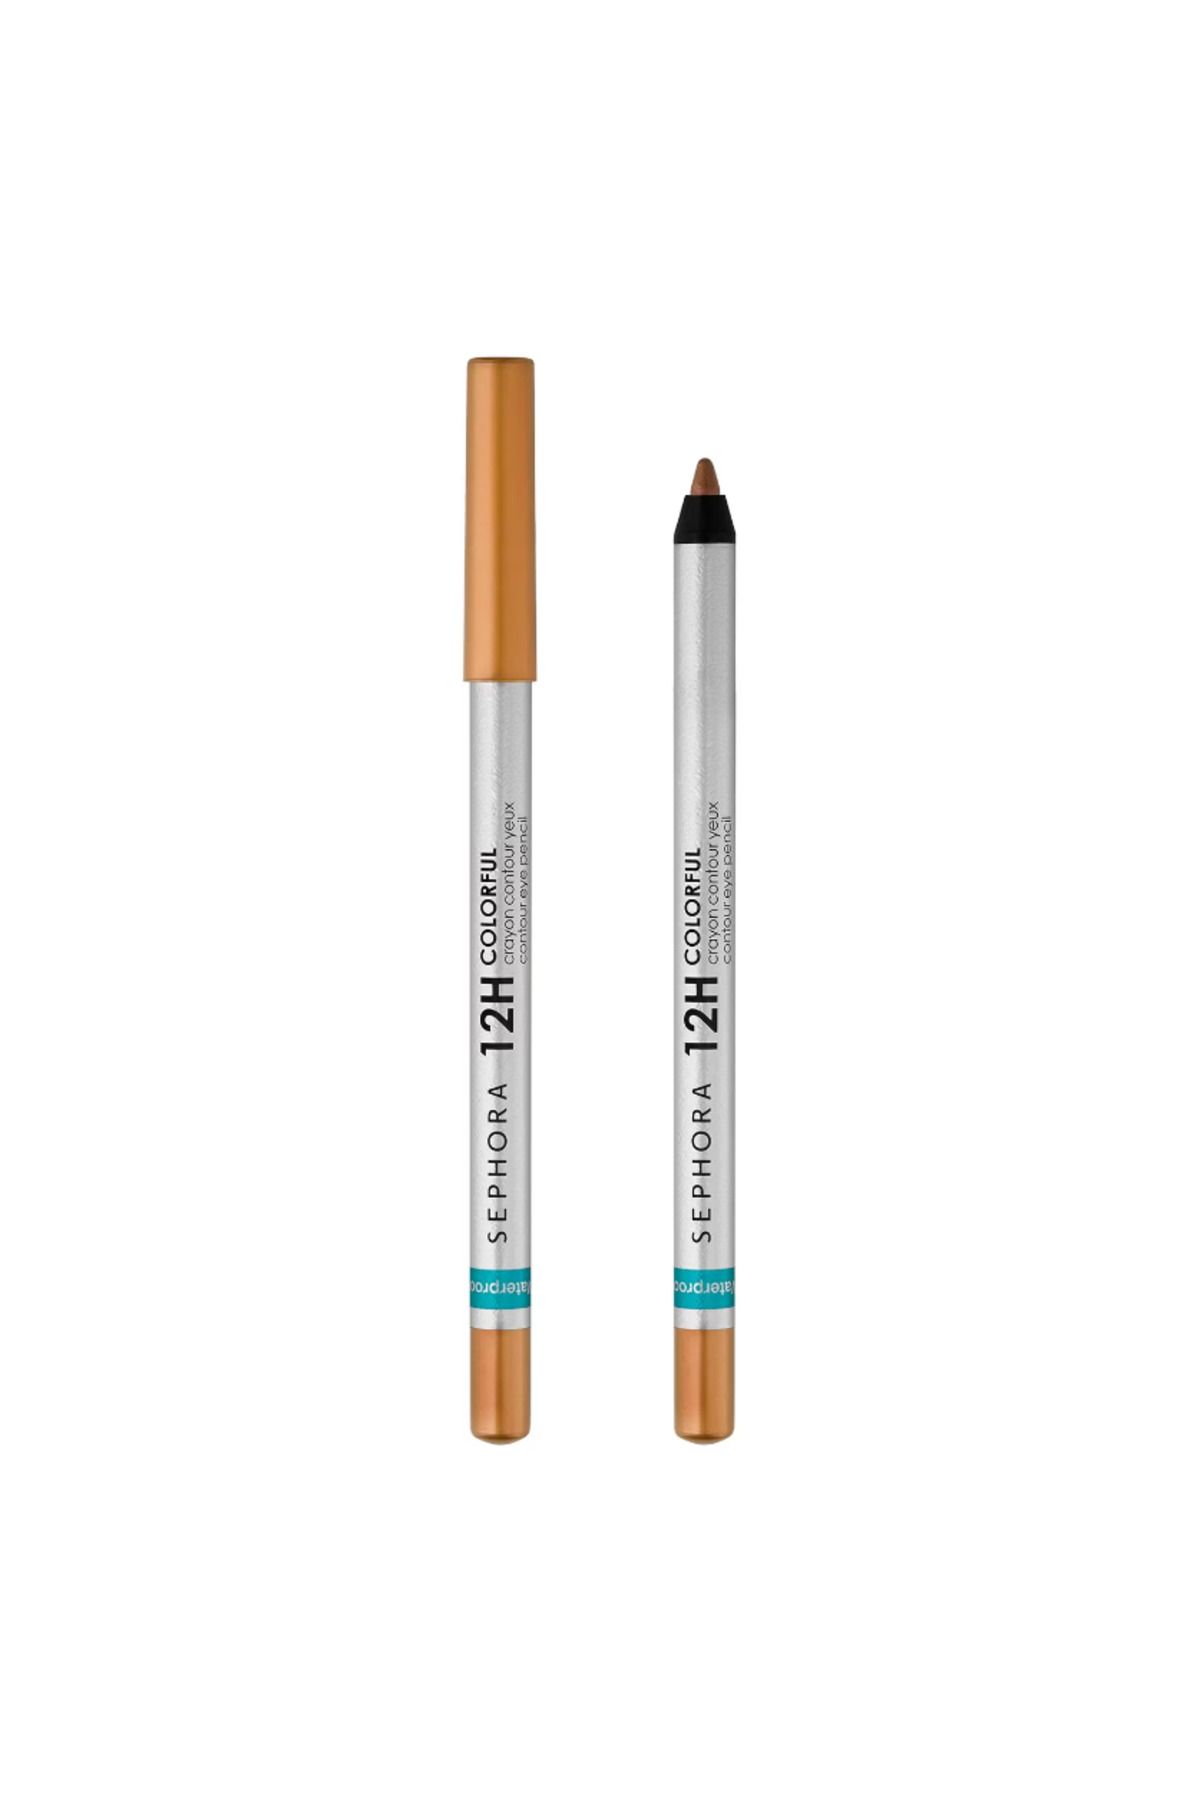 Sephora Suya Dayanıklı (Waterproof) 12H Colorful Contour Eye Pencil - Göz Kalemi 1,40 gr